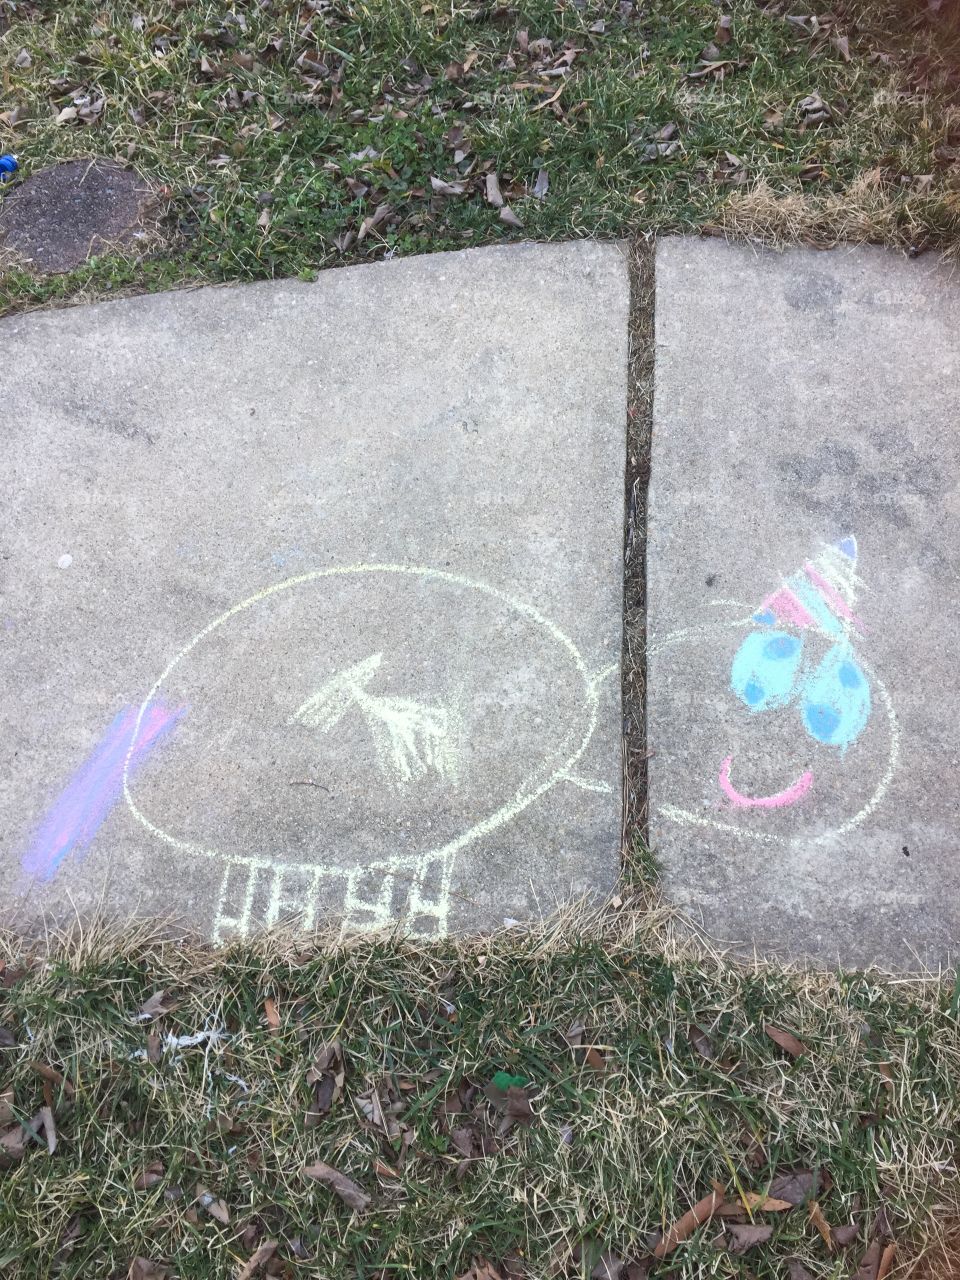 Sidewalk art 